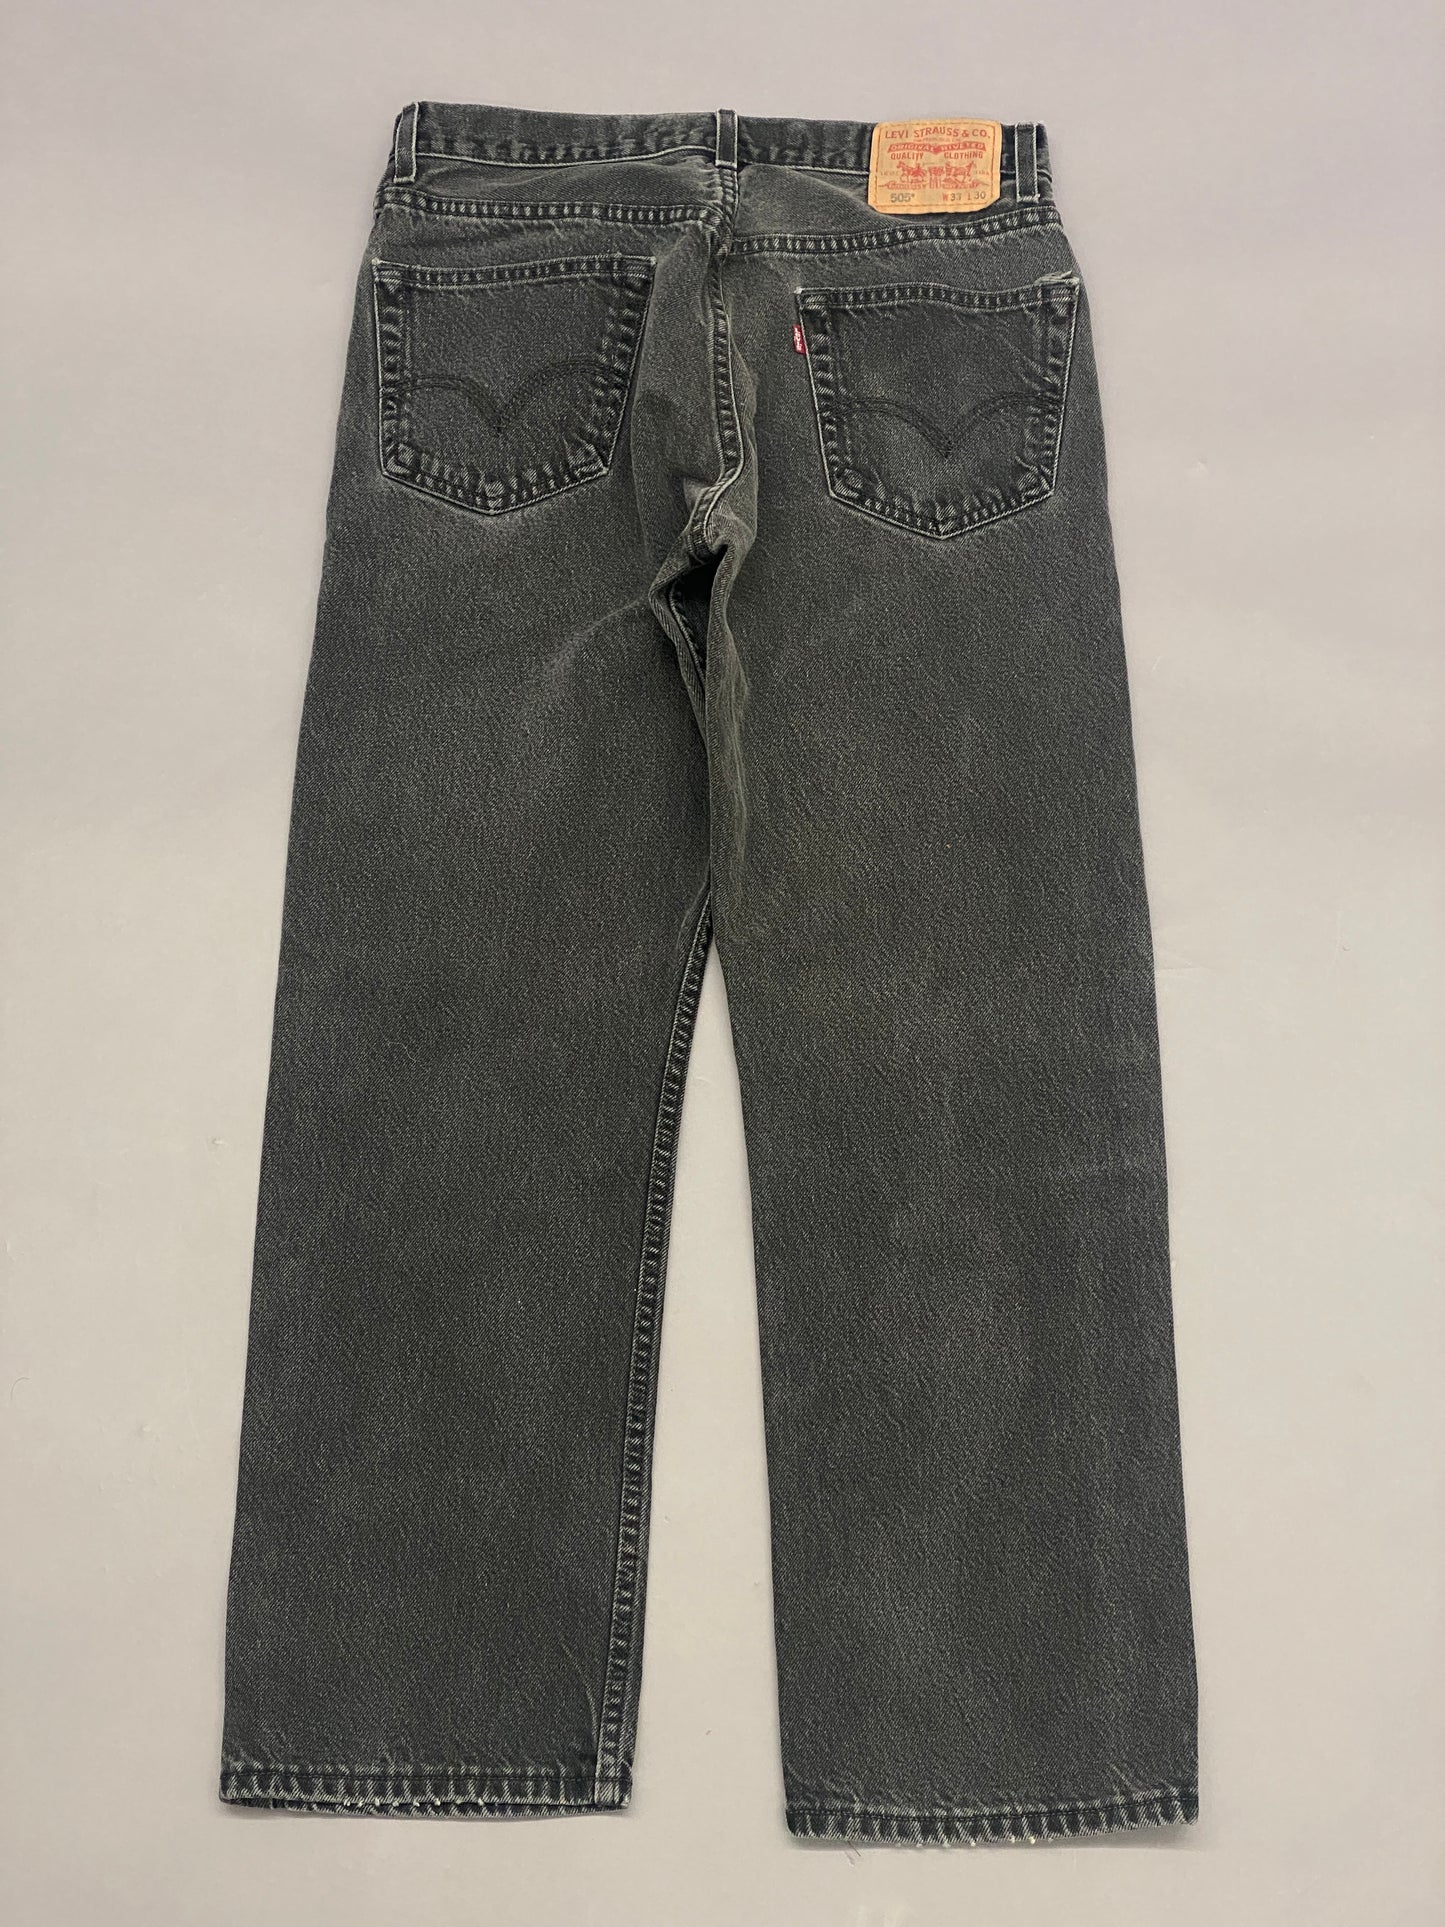 Jeans Levis 505 - 33 x 30